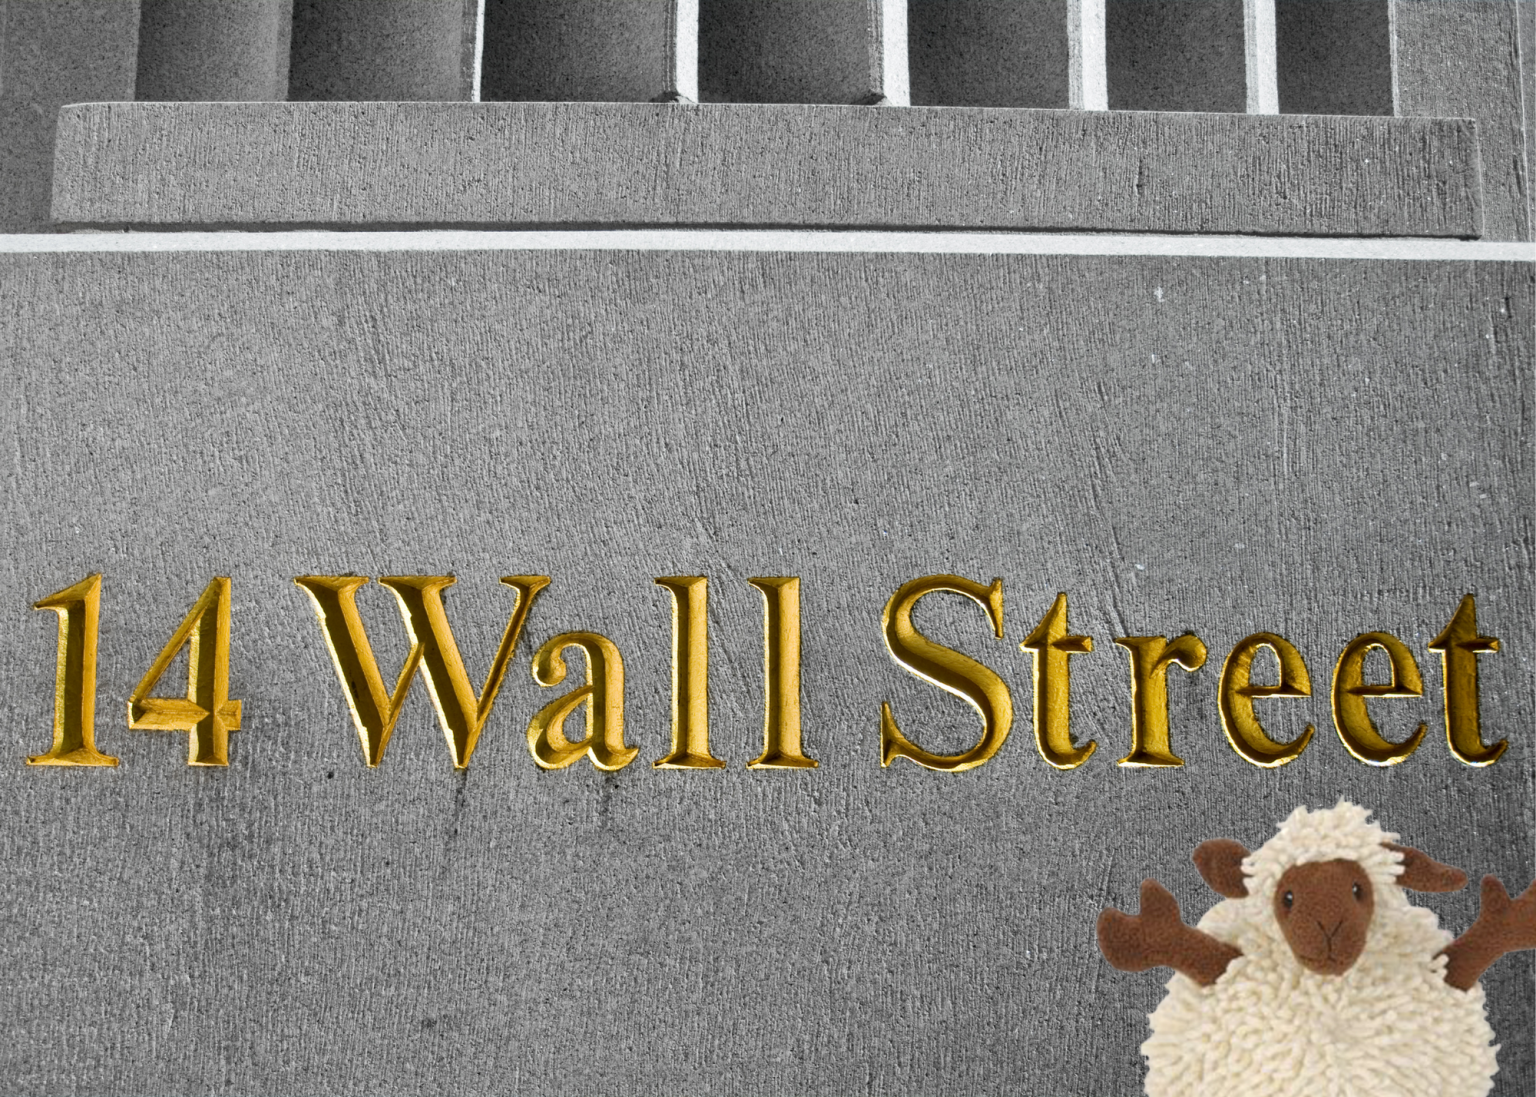 Lamb on Wall Street